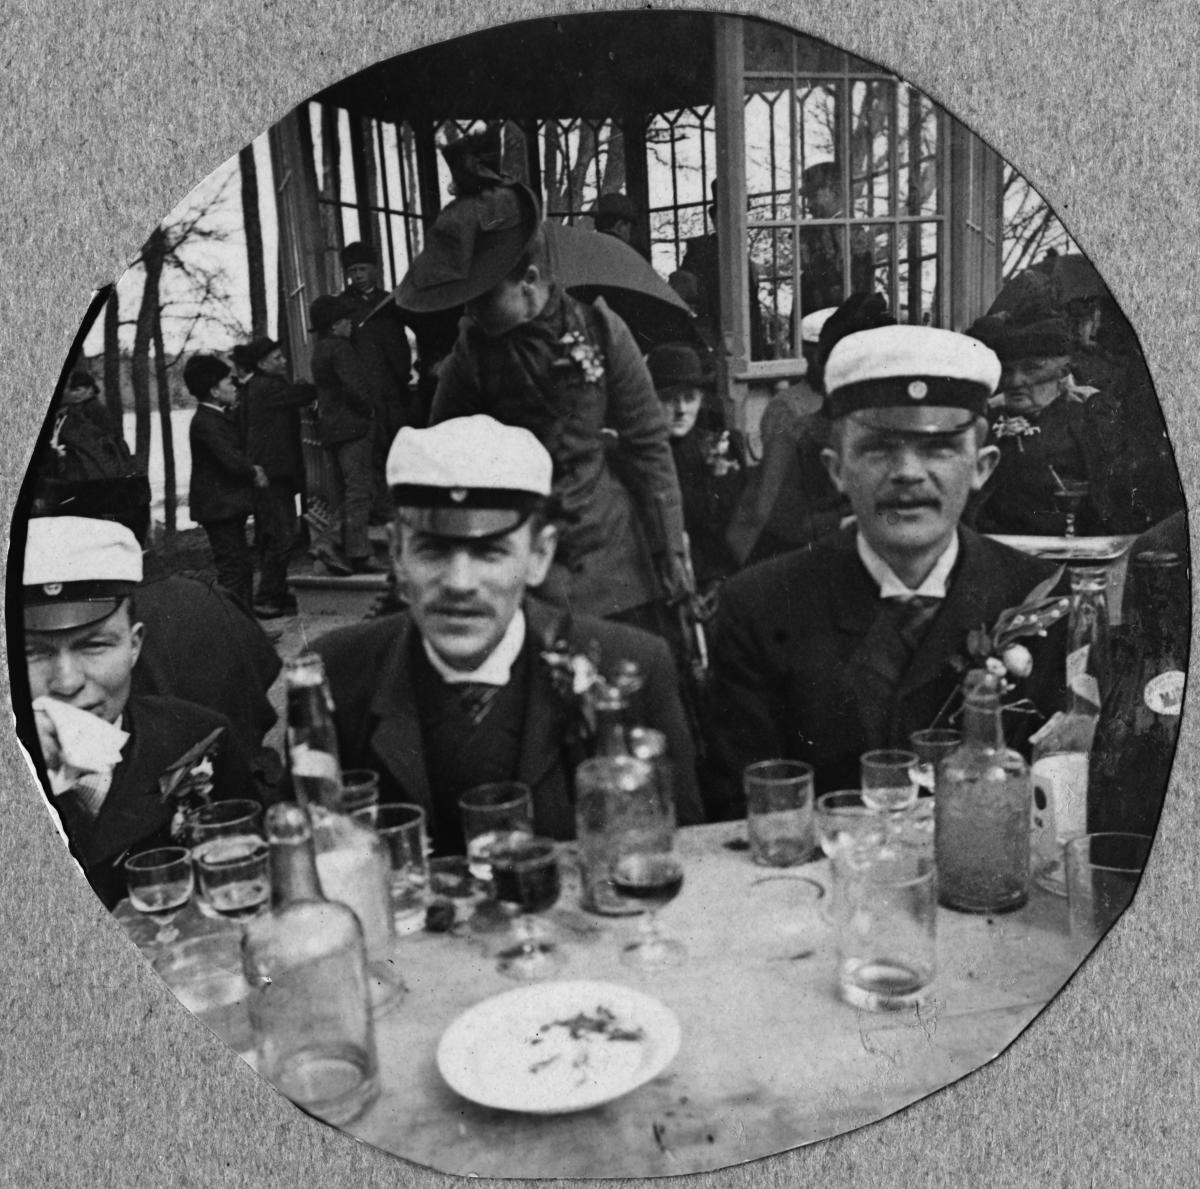 Kolme ylioppilaslakkeihin pukeutunutta miestä istuu ulkona ravintola Kaisaniemen pöydässä. Pöytä on täynnä enemmän tai vähemmän tyhjiä juomalaseja.